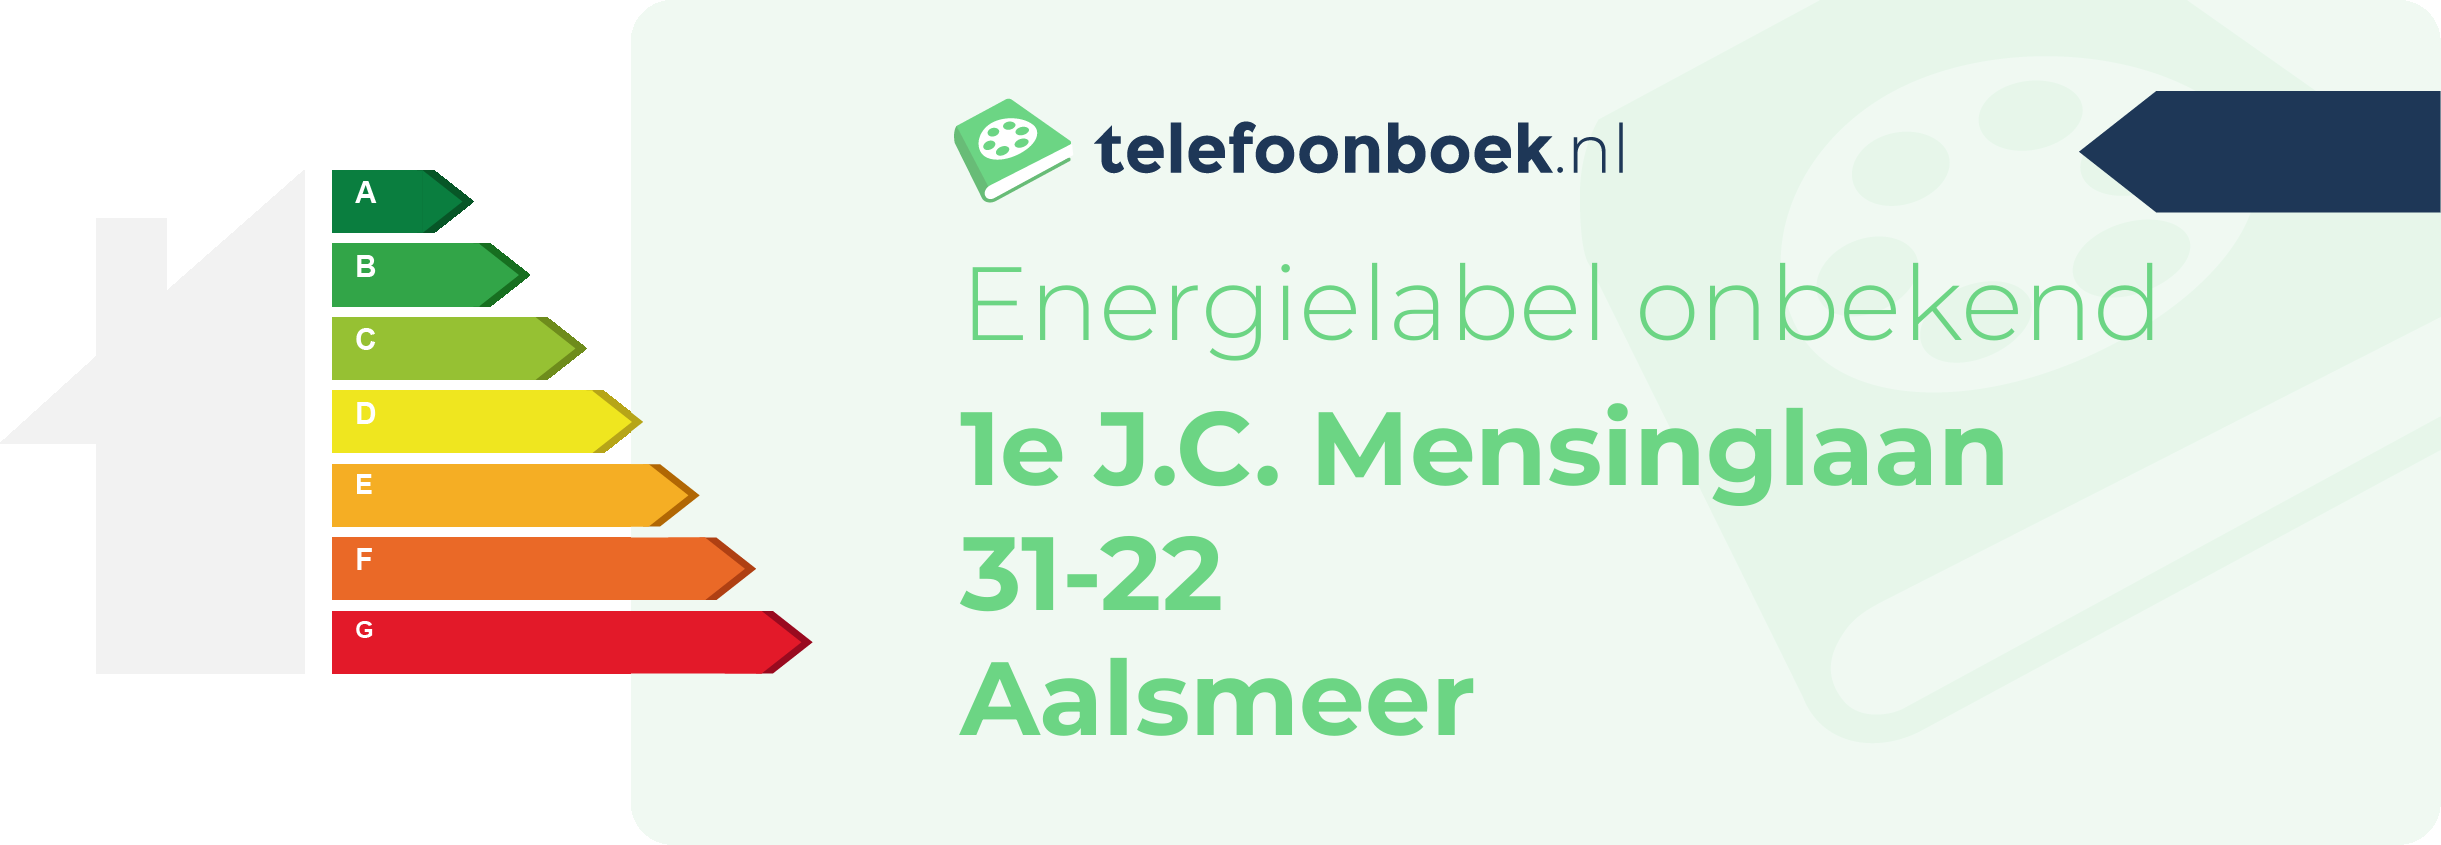 Energielabel 1e J.C. Mensinglaan 31-22 Aalsmeer